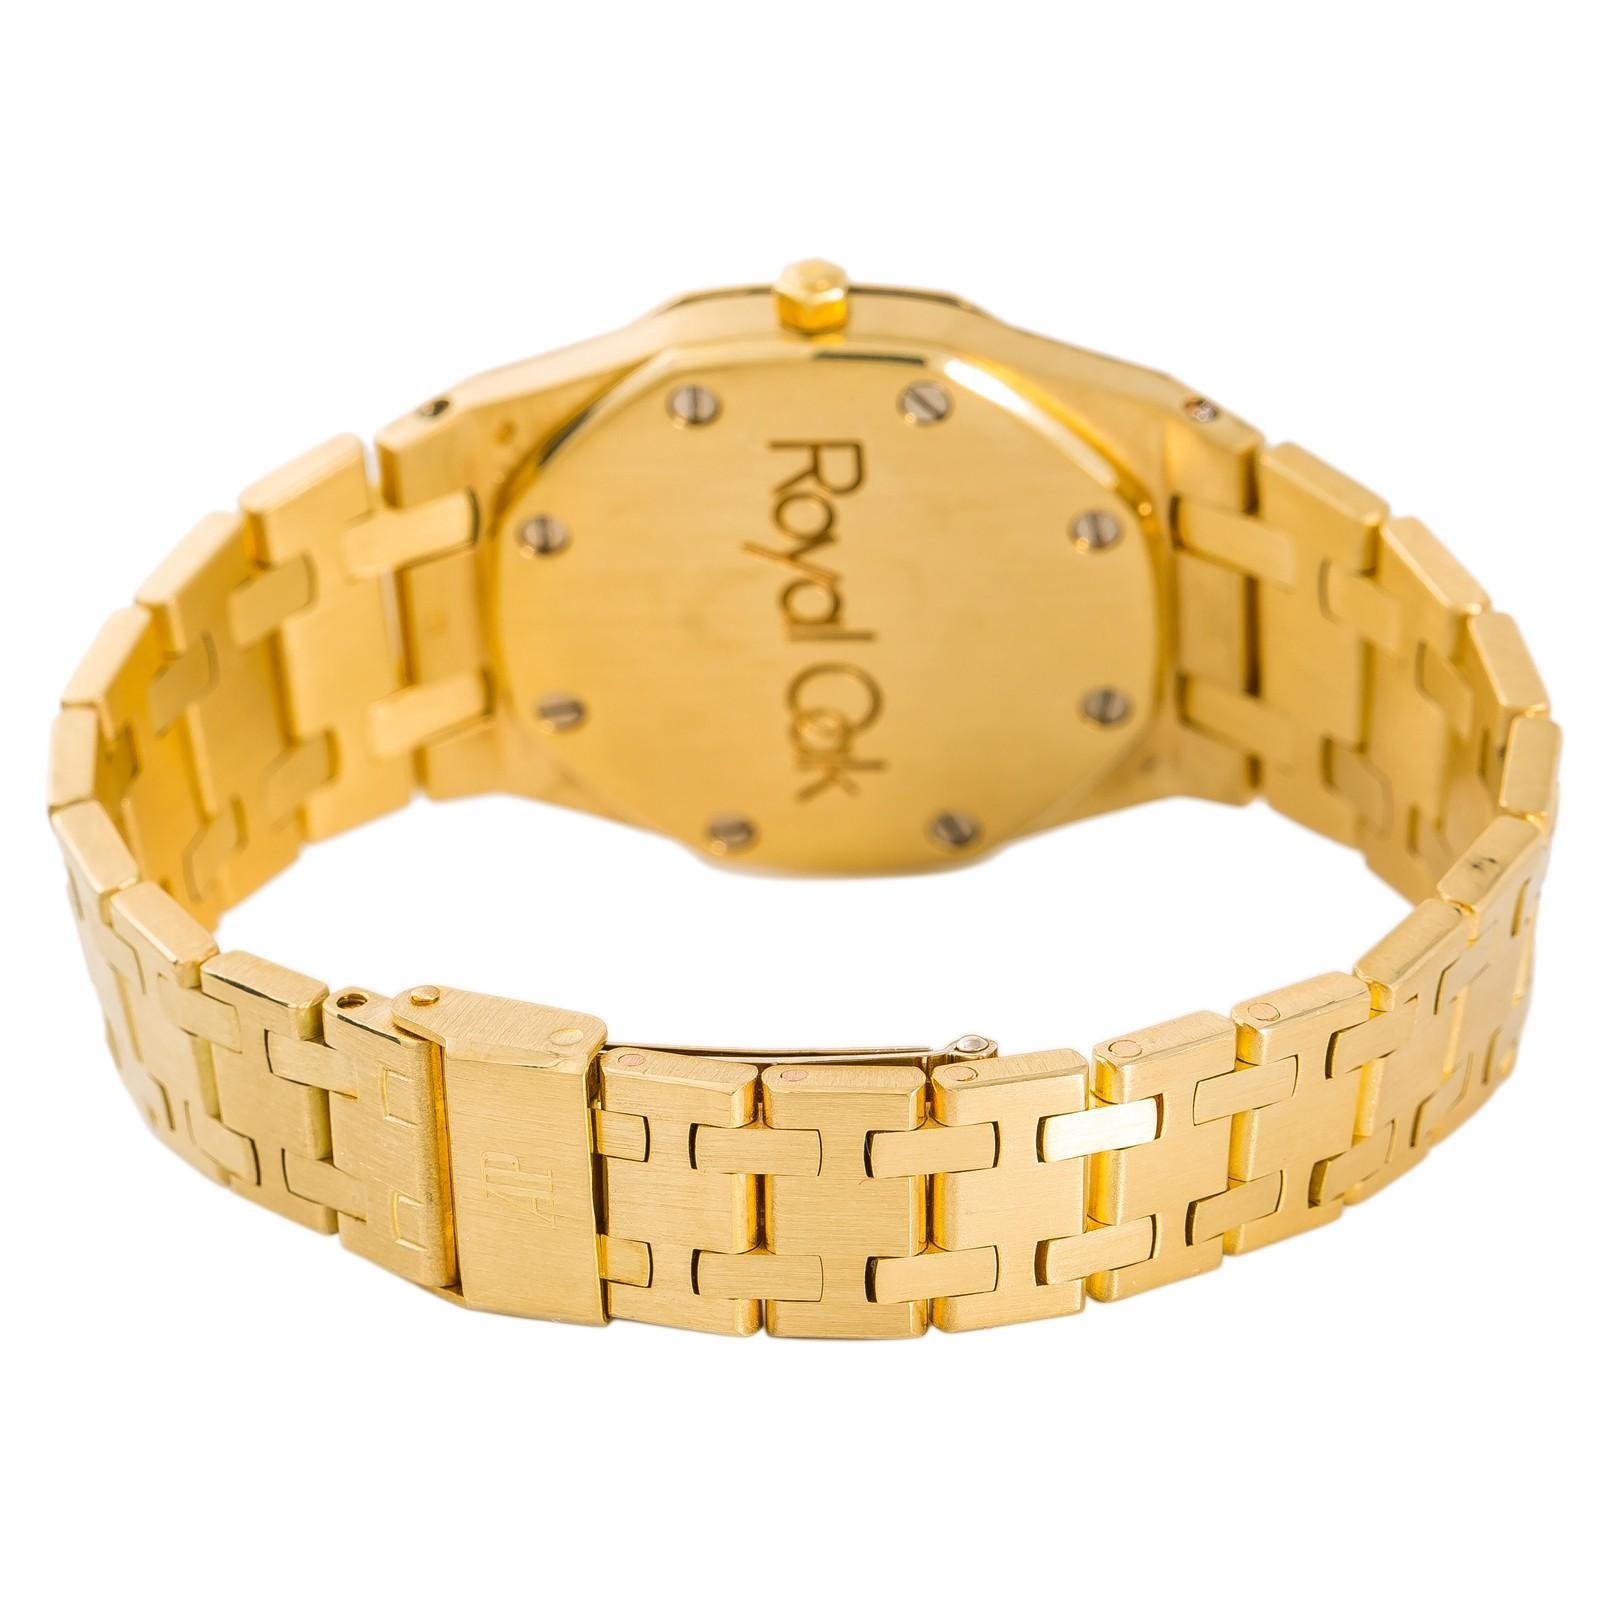 Audemars Piguet Royal Oak Référence #:Inconnue. Audemars Piguet Royal Oak Cal 2508 Womens Quartz 18K Yellow Gold Watch 30mm. Vérifié et certifié par WatchFacts. Garantie de 1 an offerte par WatchFacts.
